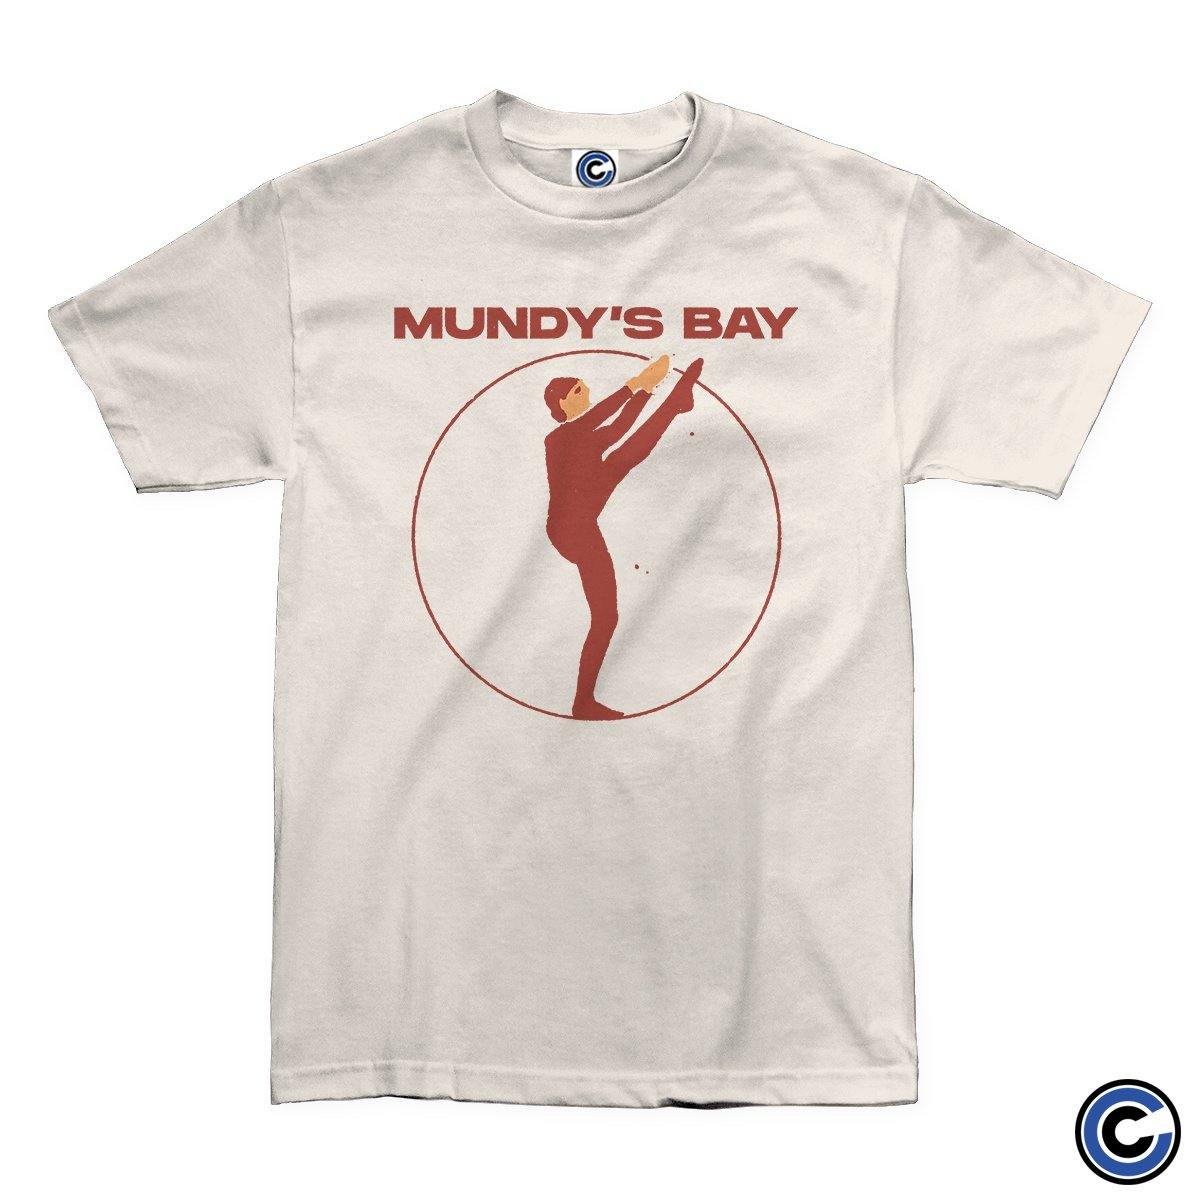 Buy – Mundy's Bay "Acrobat" Shirt – Band & Music Merch – Cold Cuts Merch